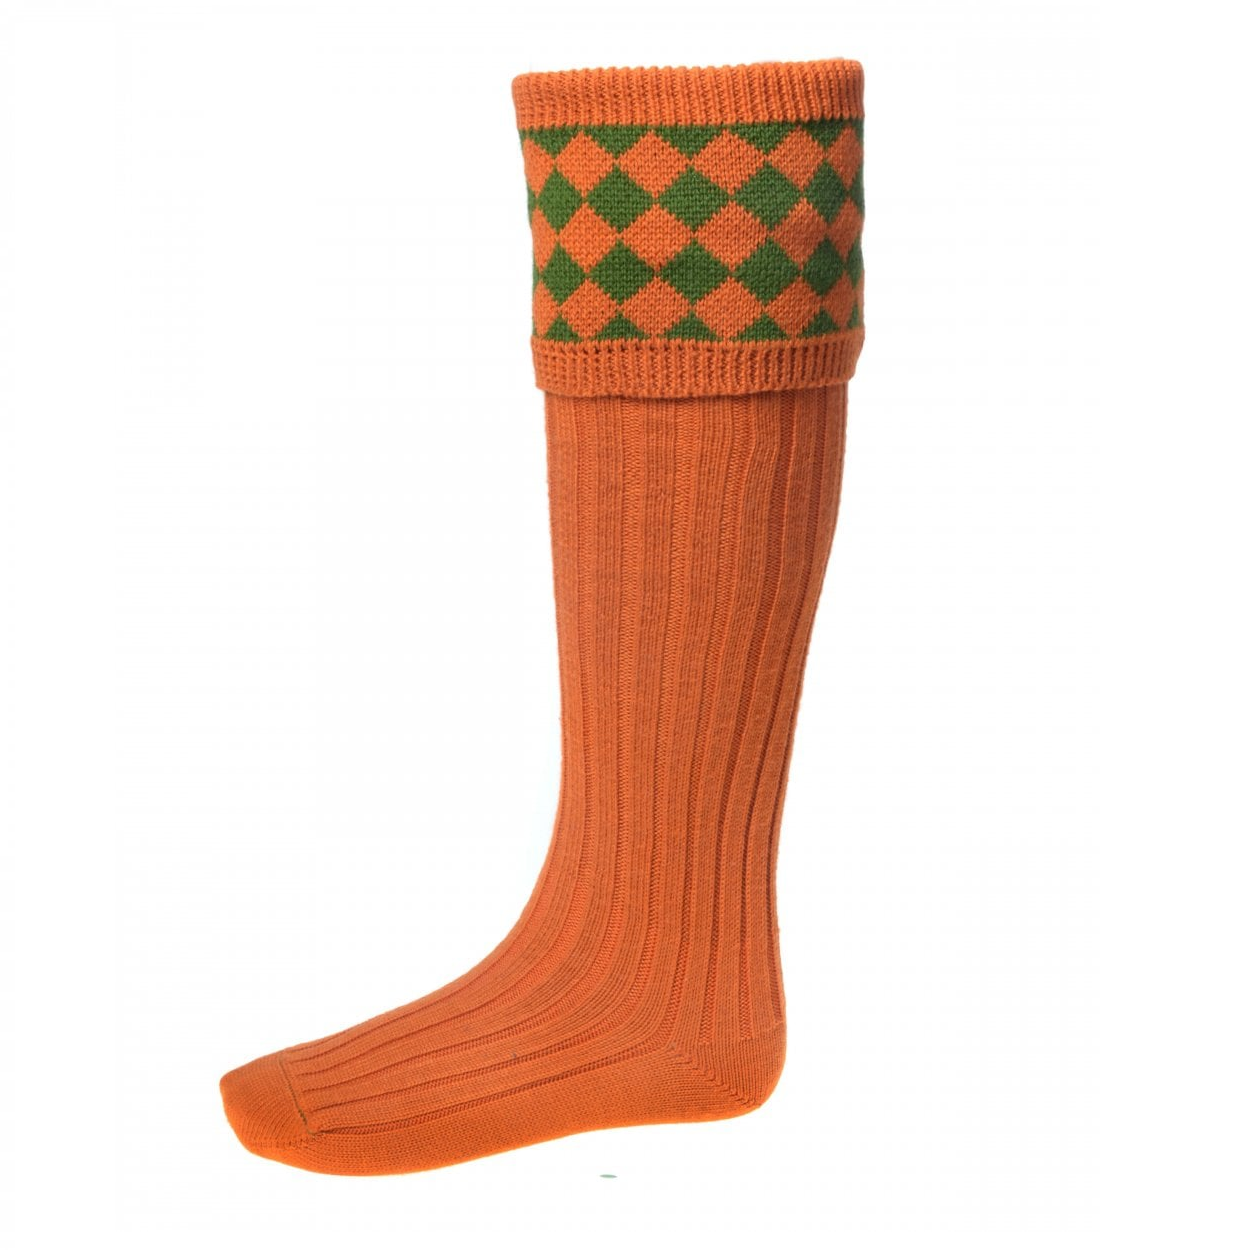 House of Cheviot Chessboard Merino Socks - Burnt Orange/Ivy Green